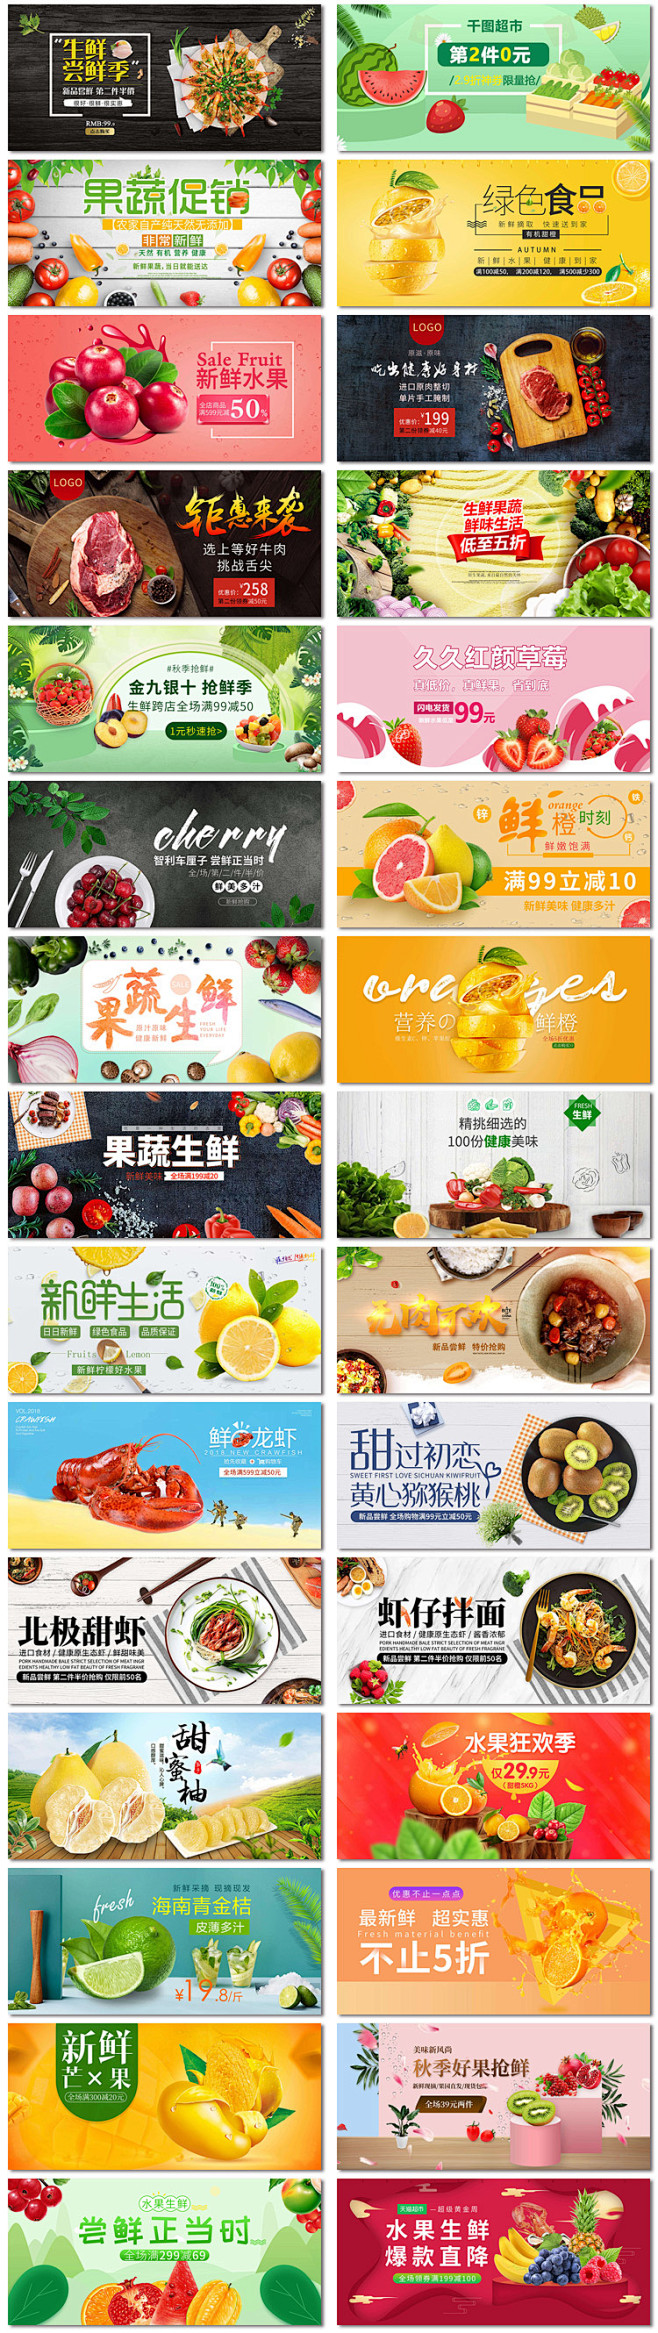 蔬菜水果生鲜美食海鲜超市网页电商促销ba...